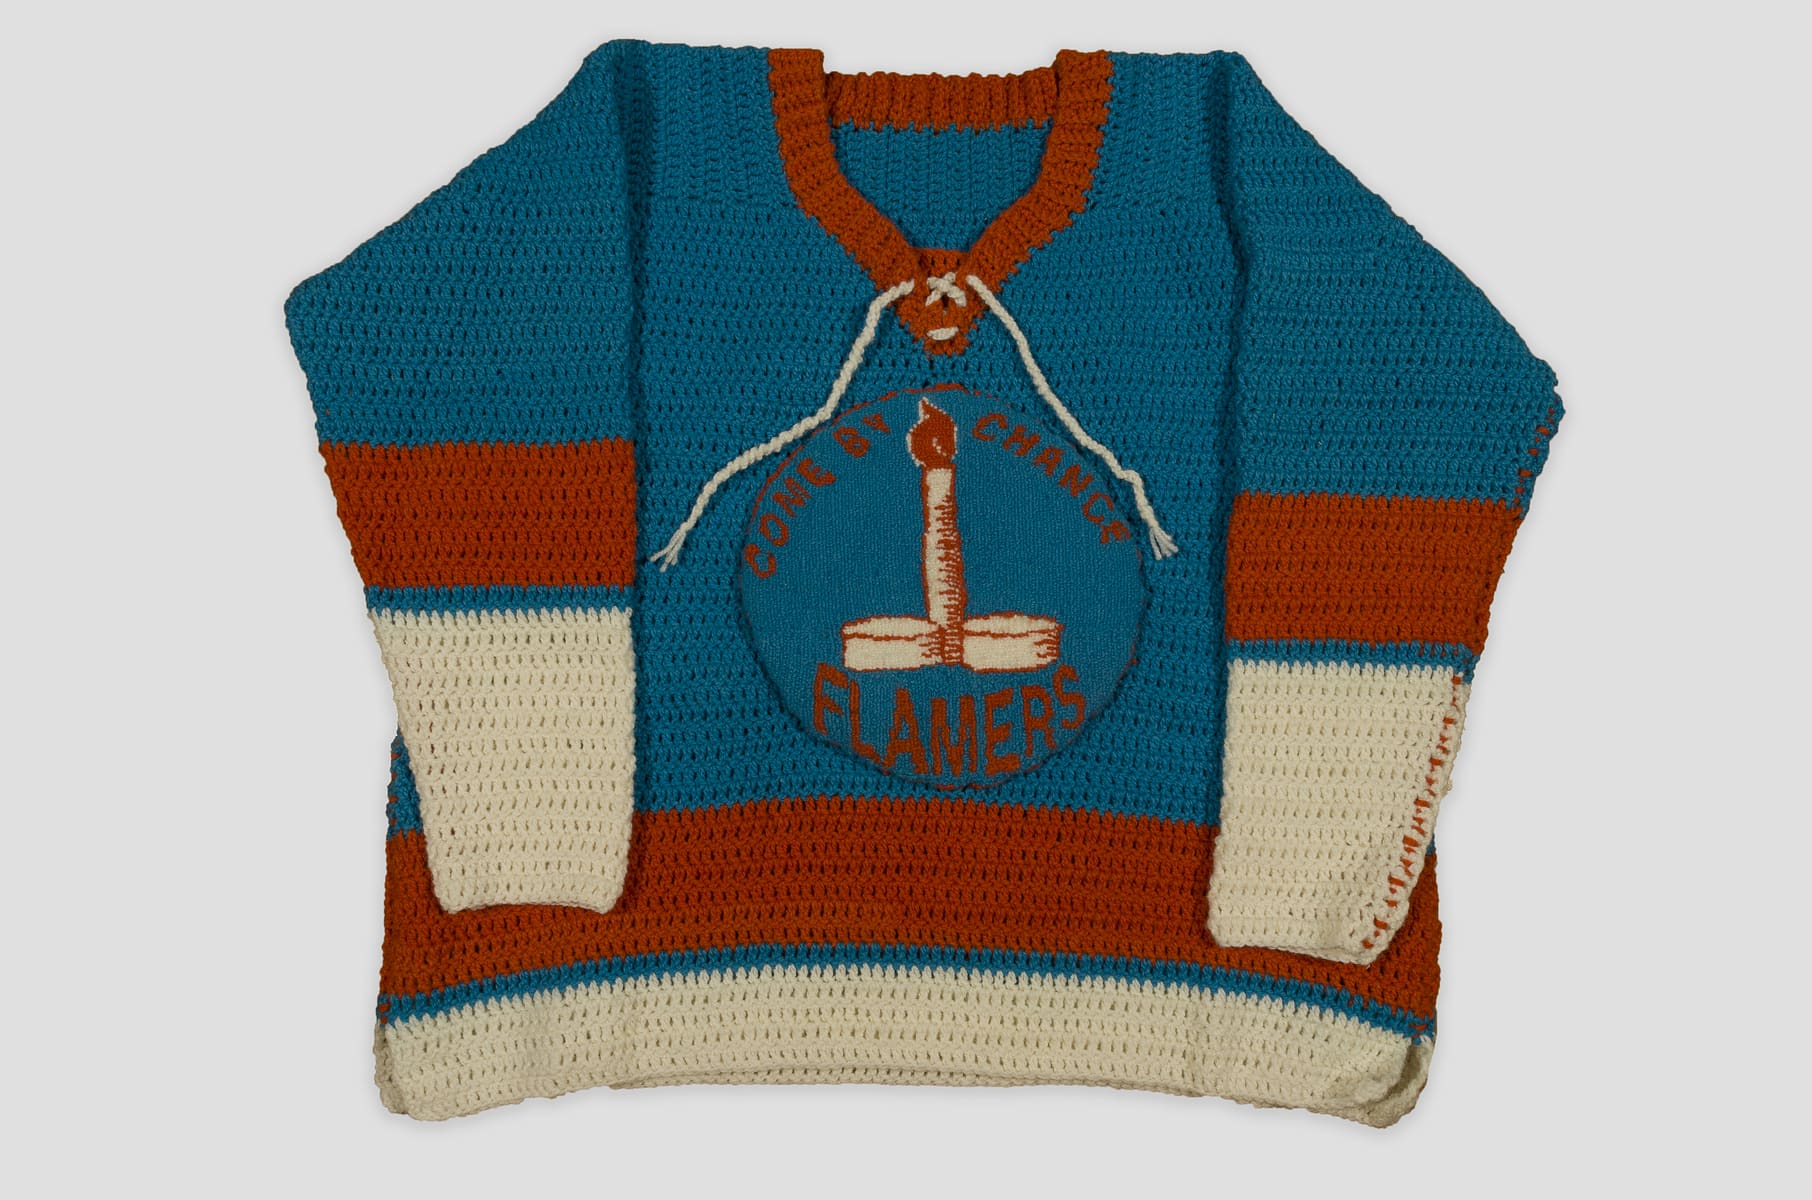 image description: a handmade replica hockey jersey